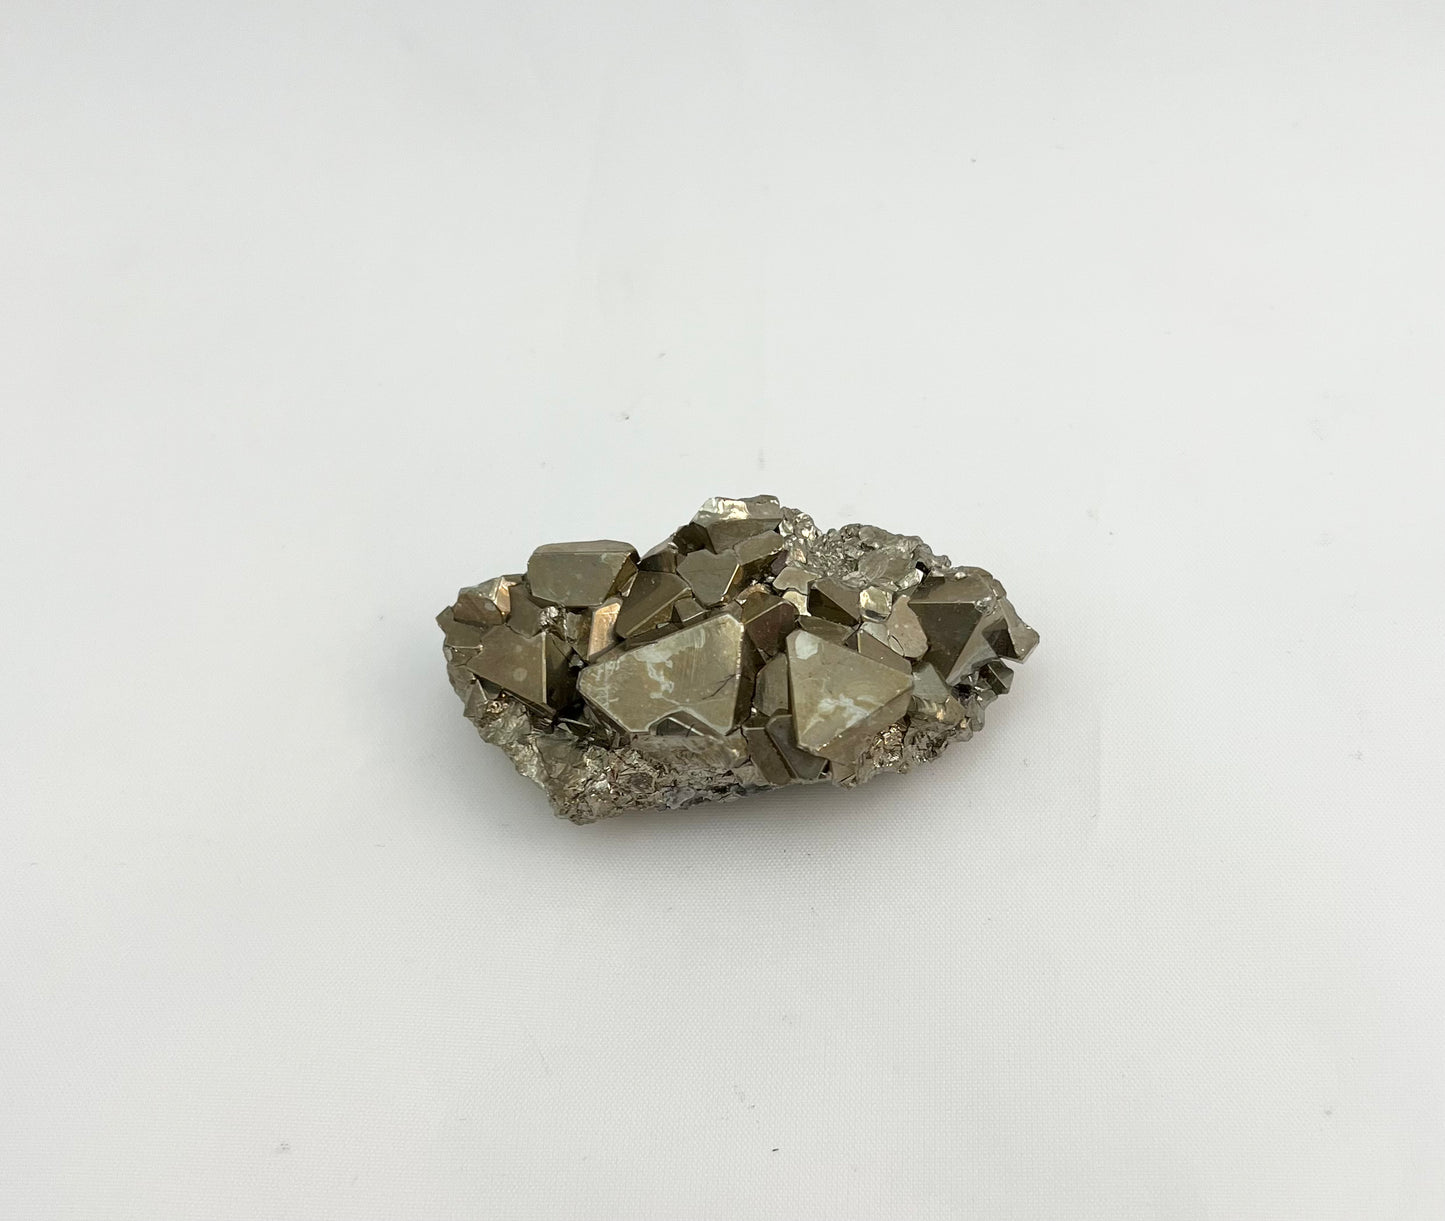 Peruvian Pyrite Specimen